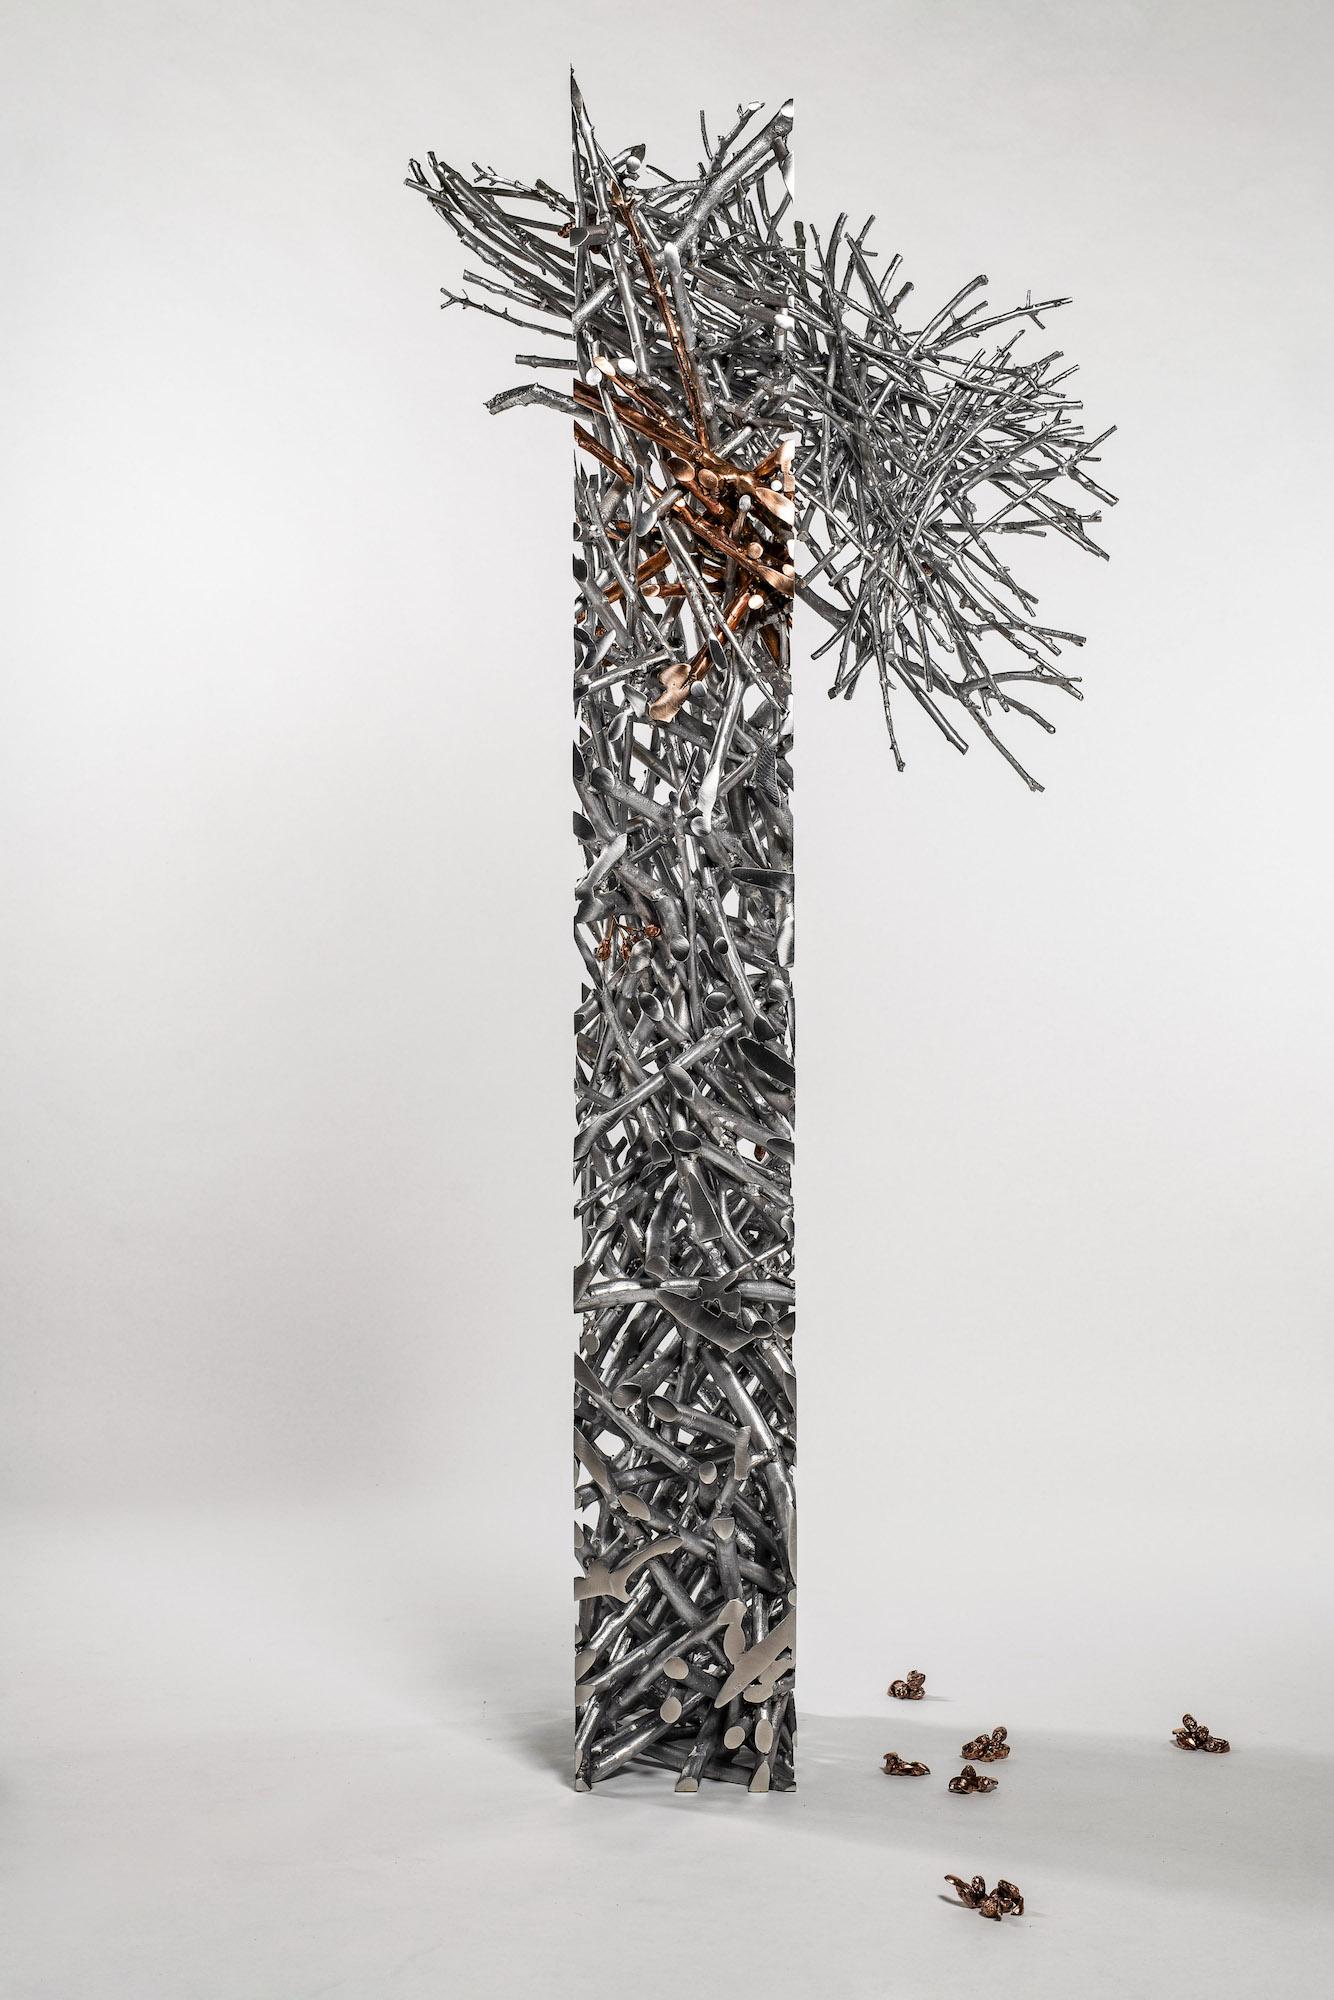 Instant Tree Olives est une sculpture en aluminium et en bronze du sculpteur tchèque contemporain Ondřej Oliva, dont les dimensions sont de 182 × 78 × 39 cm (71,7 × 30,7 × 15,4 in).
Cette sculpture est une pièce unique signée par l'artiste et